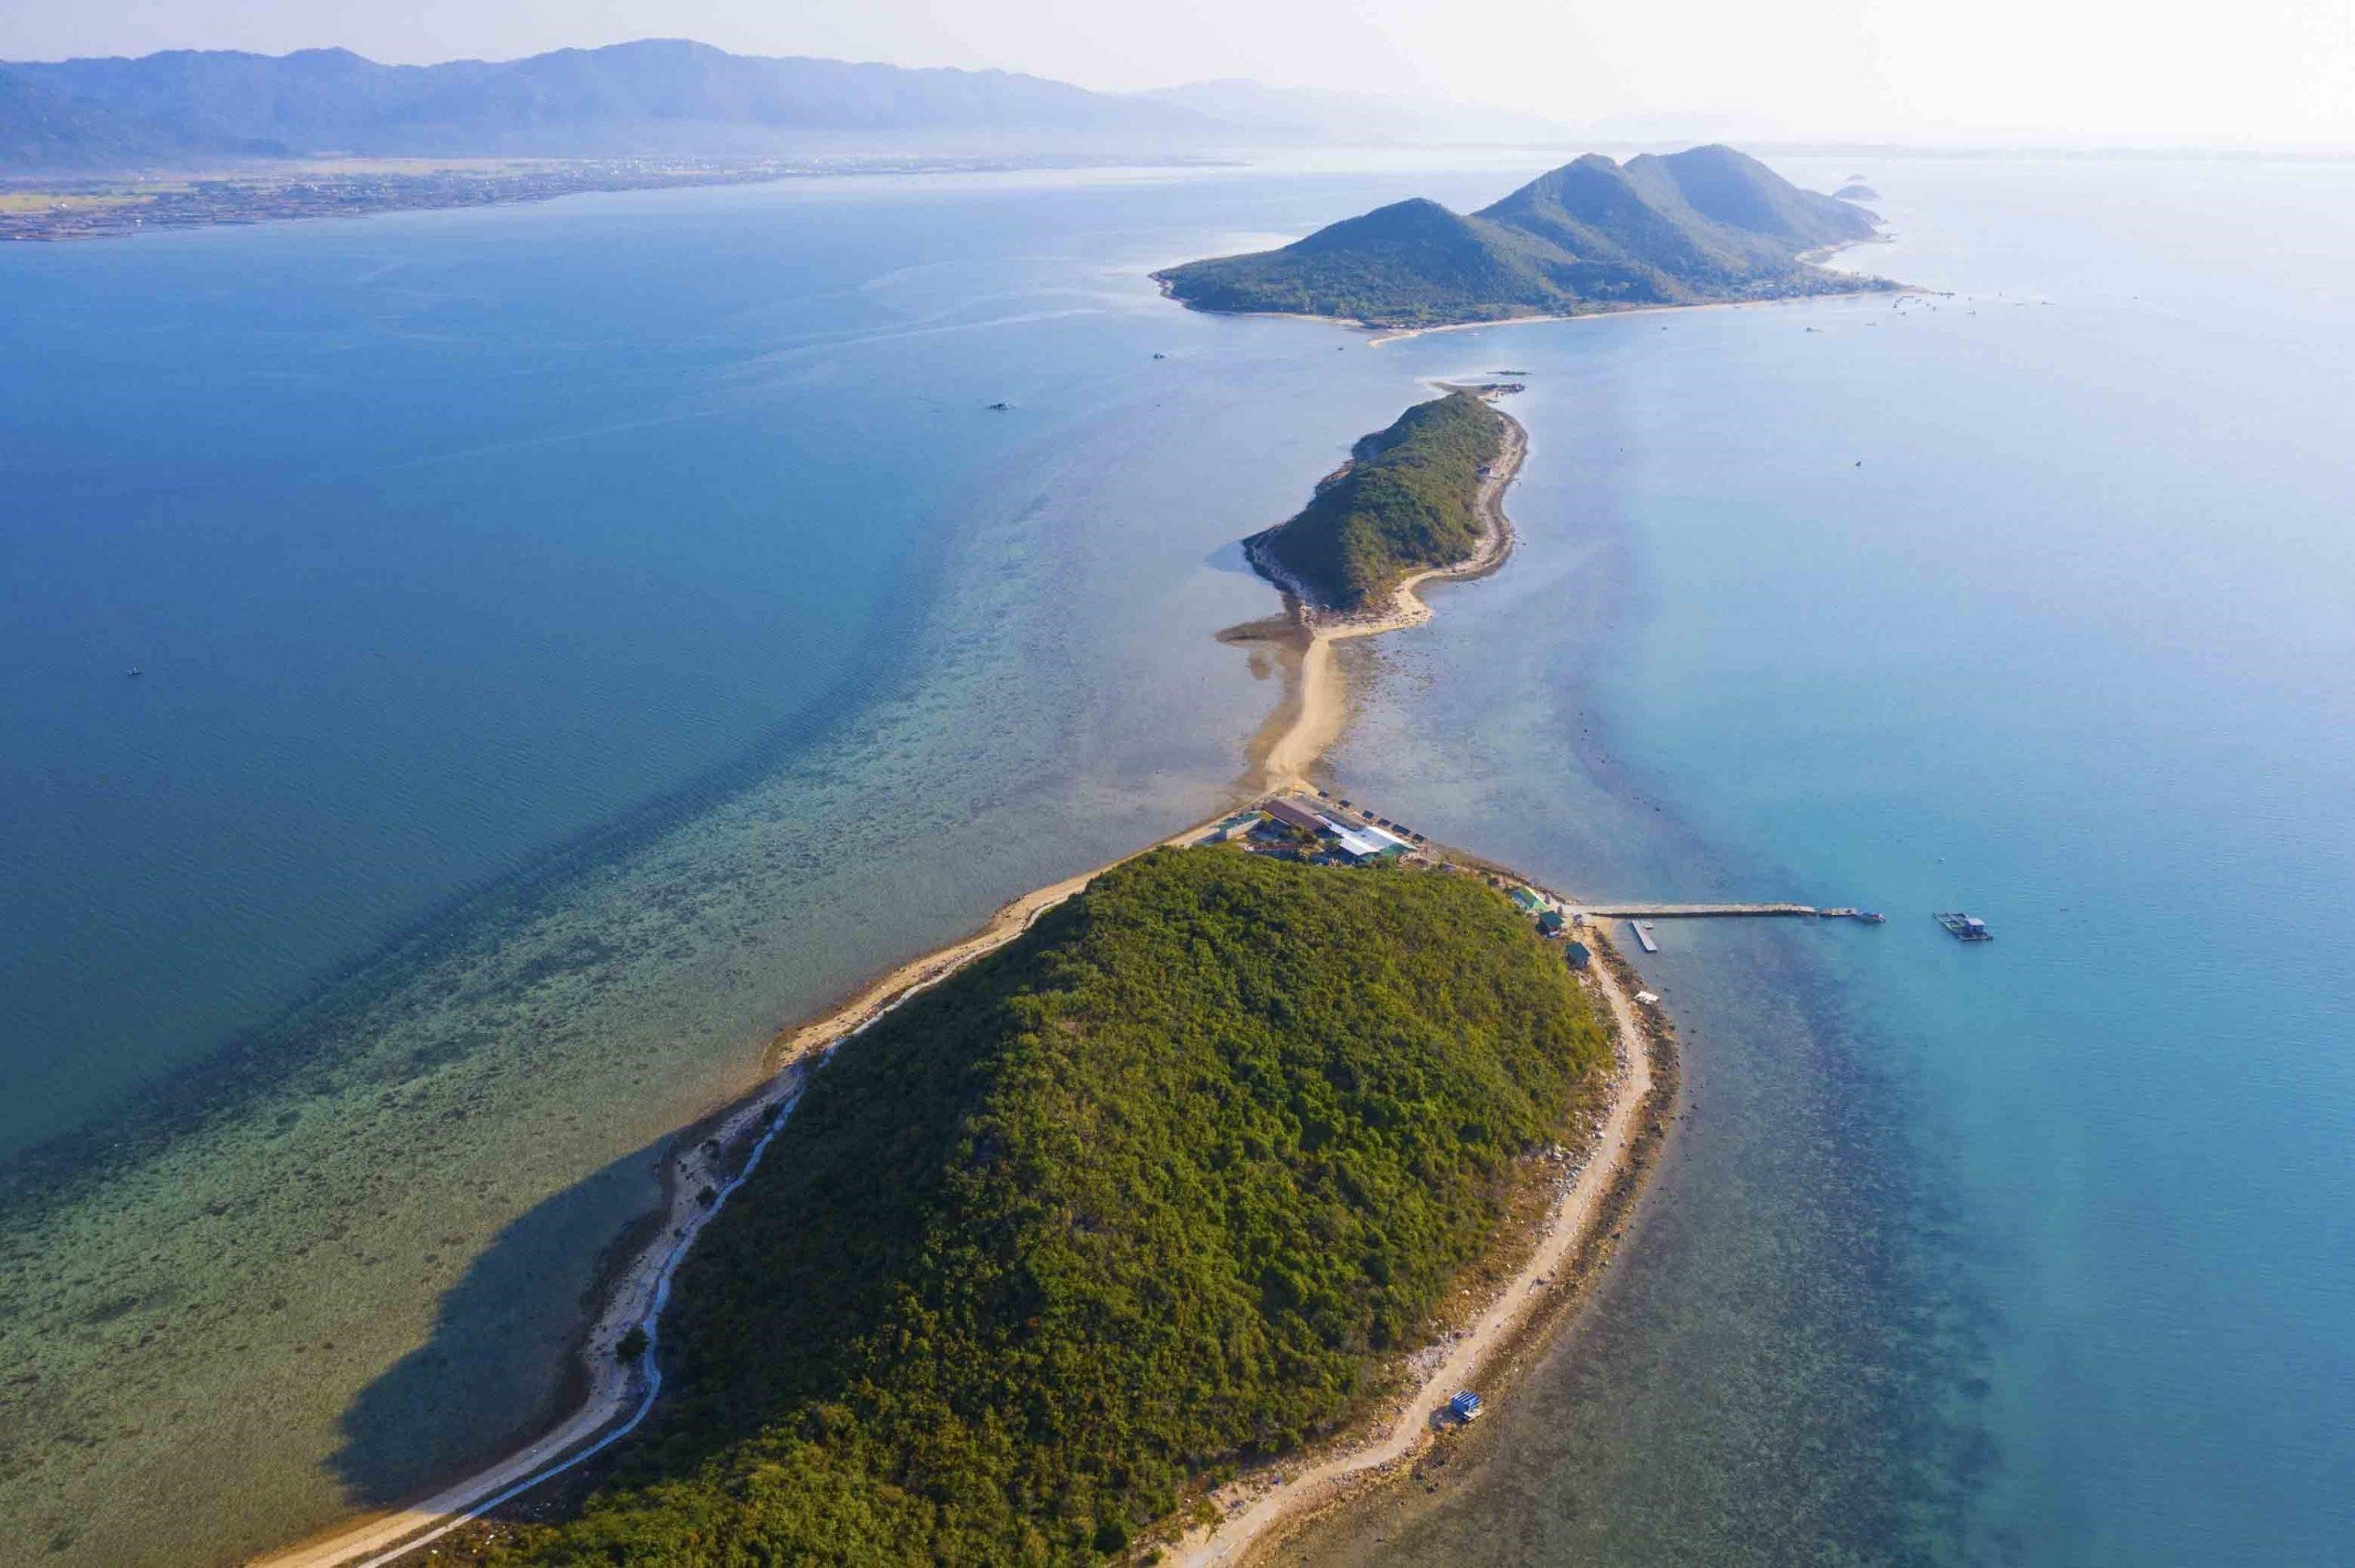 Đảo Điệp Sơn là một trong những điểm đến du lịch nổi tiếng ở Việt Nam, với bãi biển trong xanh, cát trắng mịn và nhiều hoạt động thú vị như lặn biển, câu cá, tham quan hang động và thưởng thức hải sản tươi ngon.